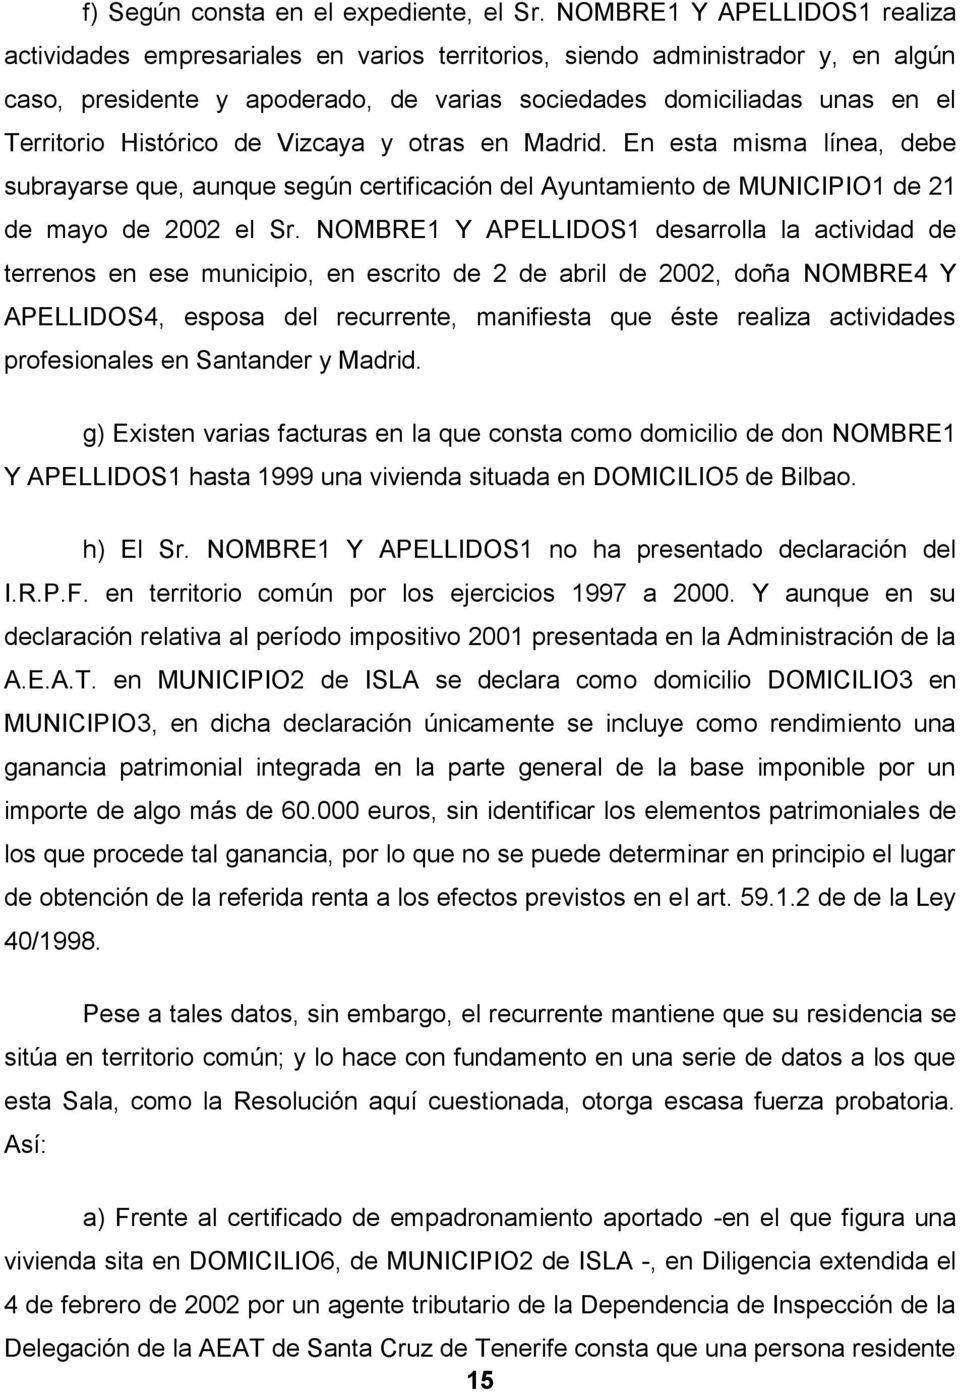 Histórico de Vizcaya y otras en Madrid. En esta misma línea, debe subrayarse que, aunque según certificación del Ayuntamiento de MUNICIPIO1 de 21 de mayo de 2002 el Sr.